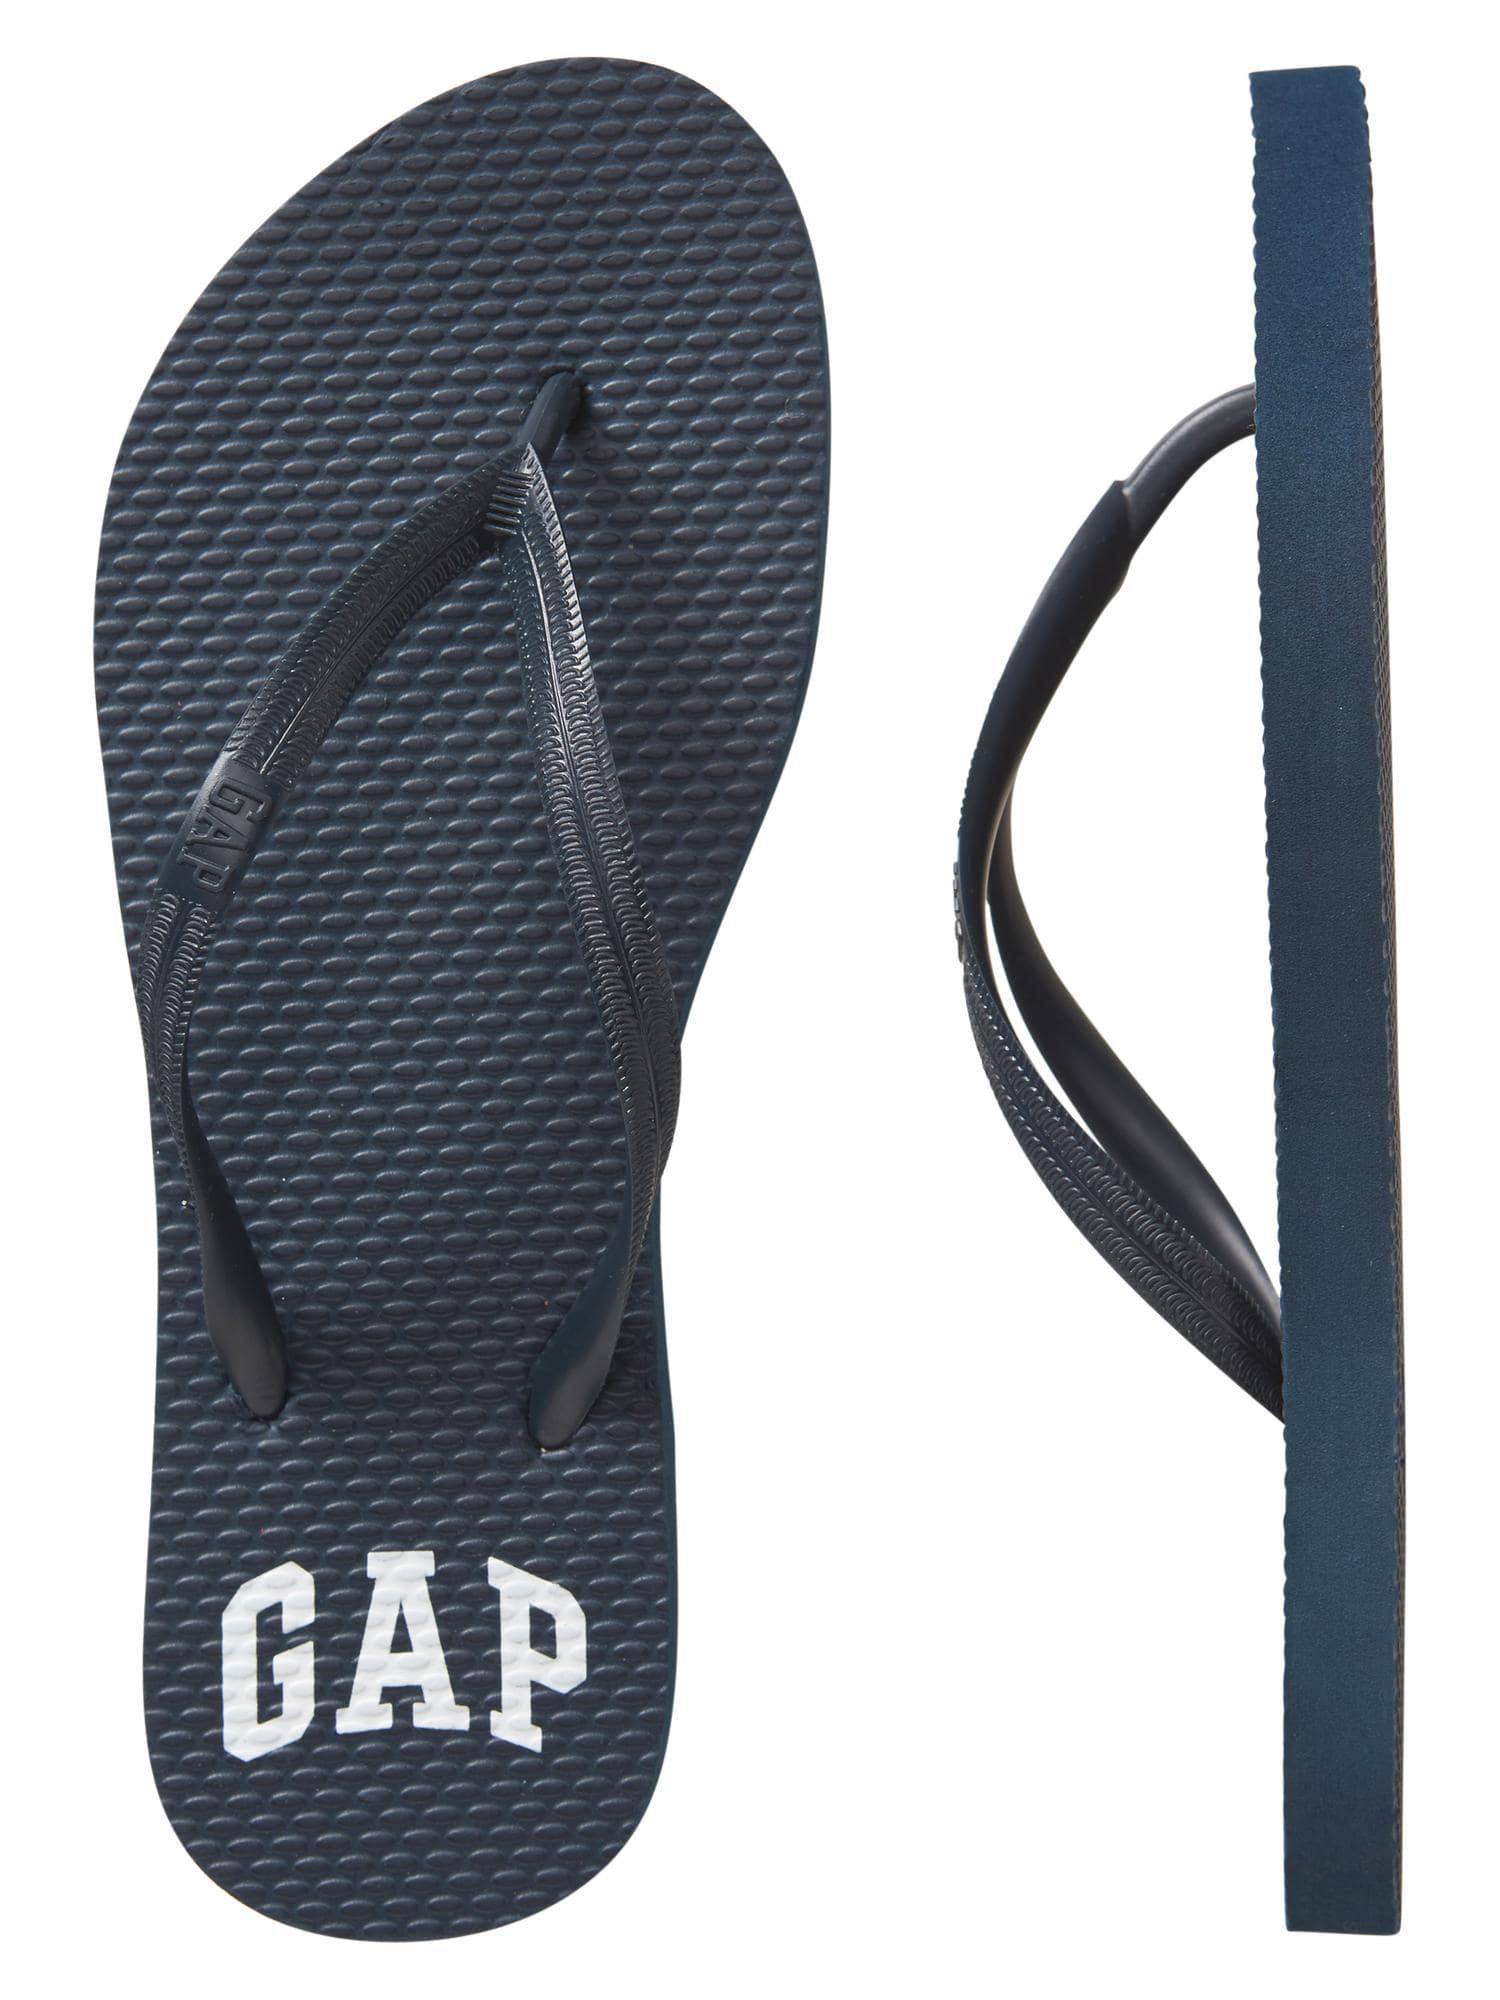 Gap Factory Logo - Lyst Factory Logo Flip Flops in Blue